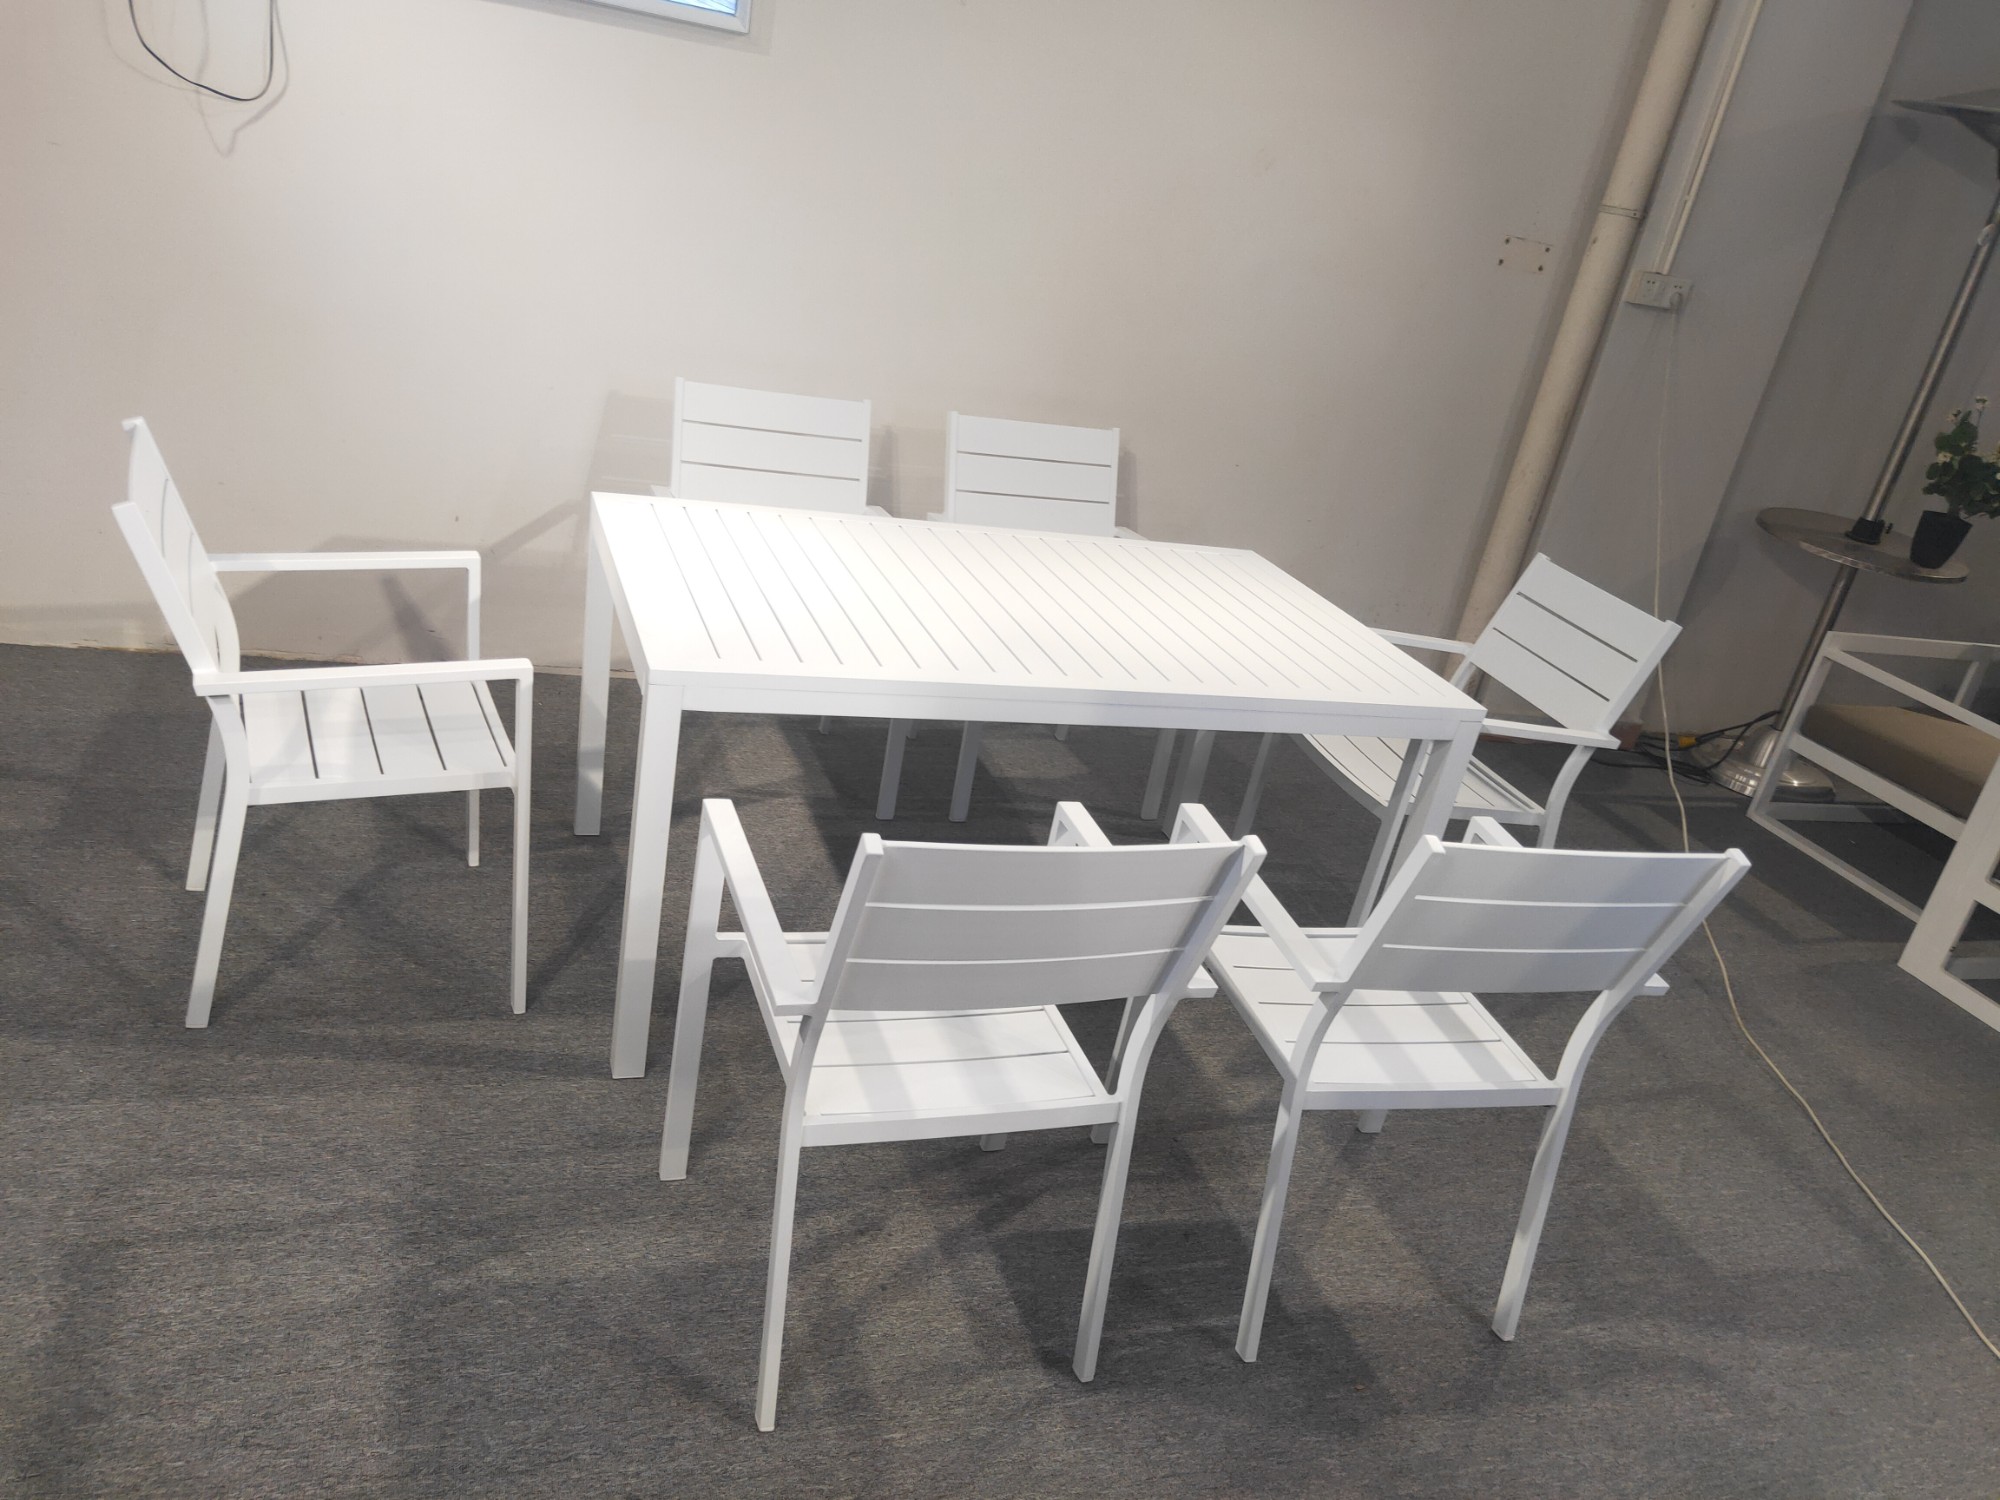 Mesas y sillas de comedor al aire libre Muebles de patio